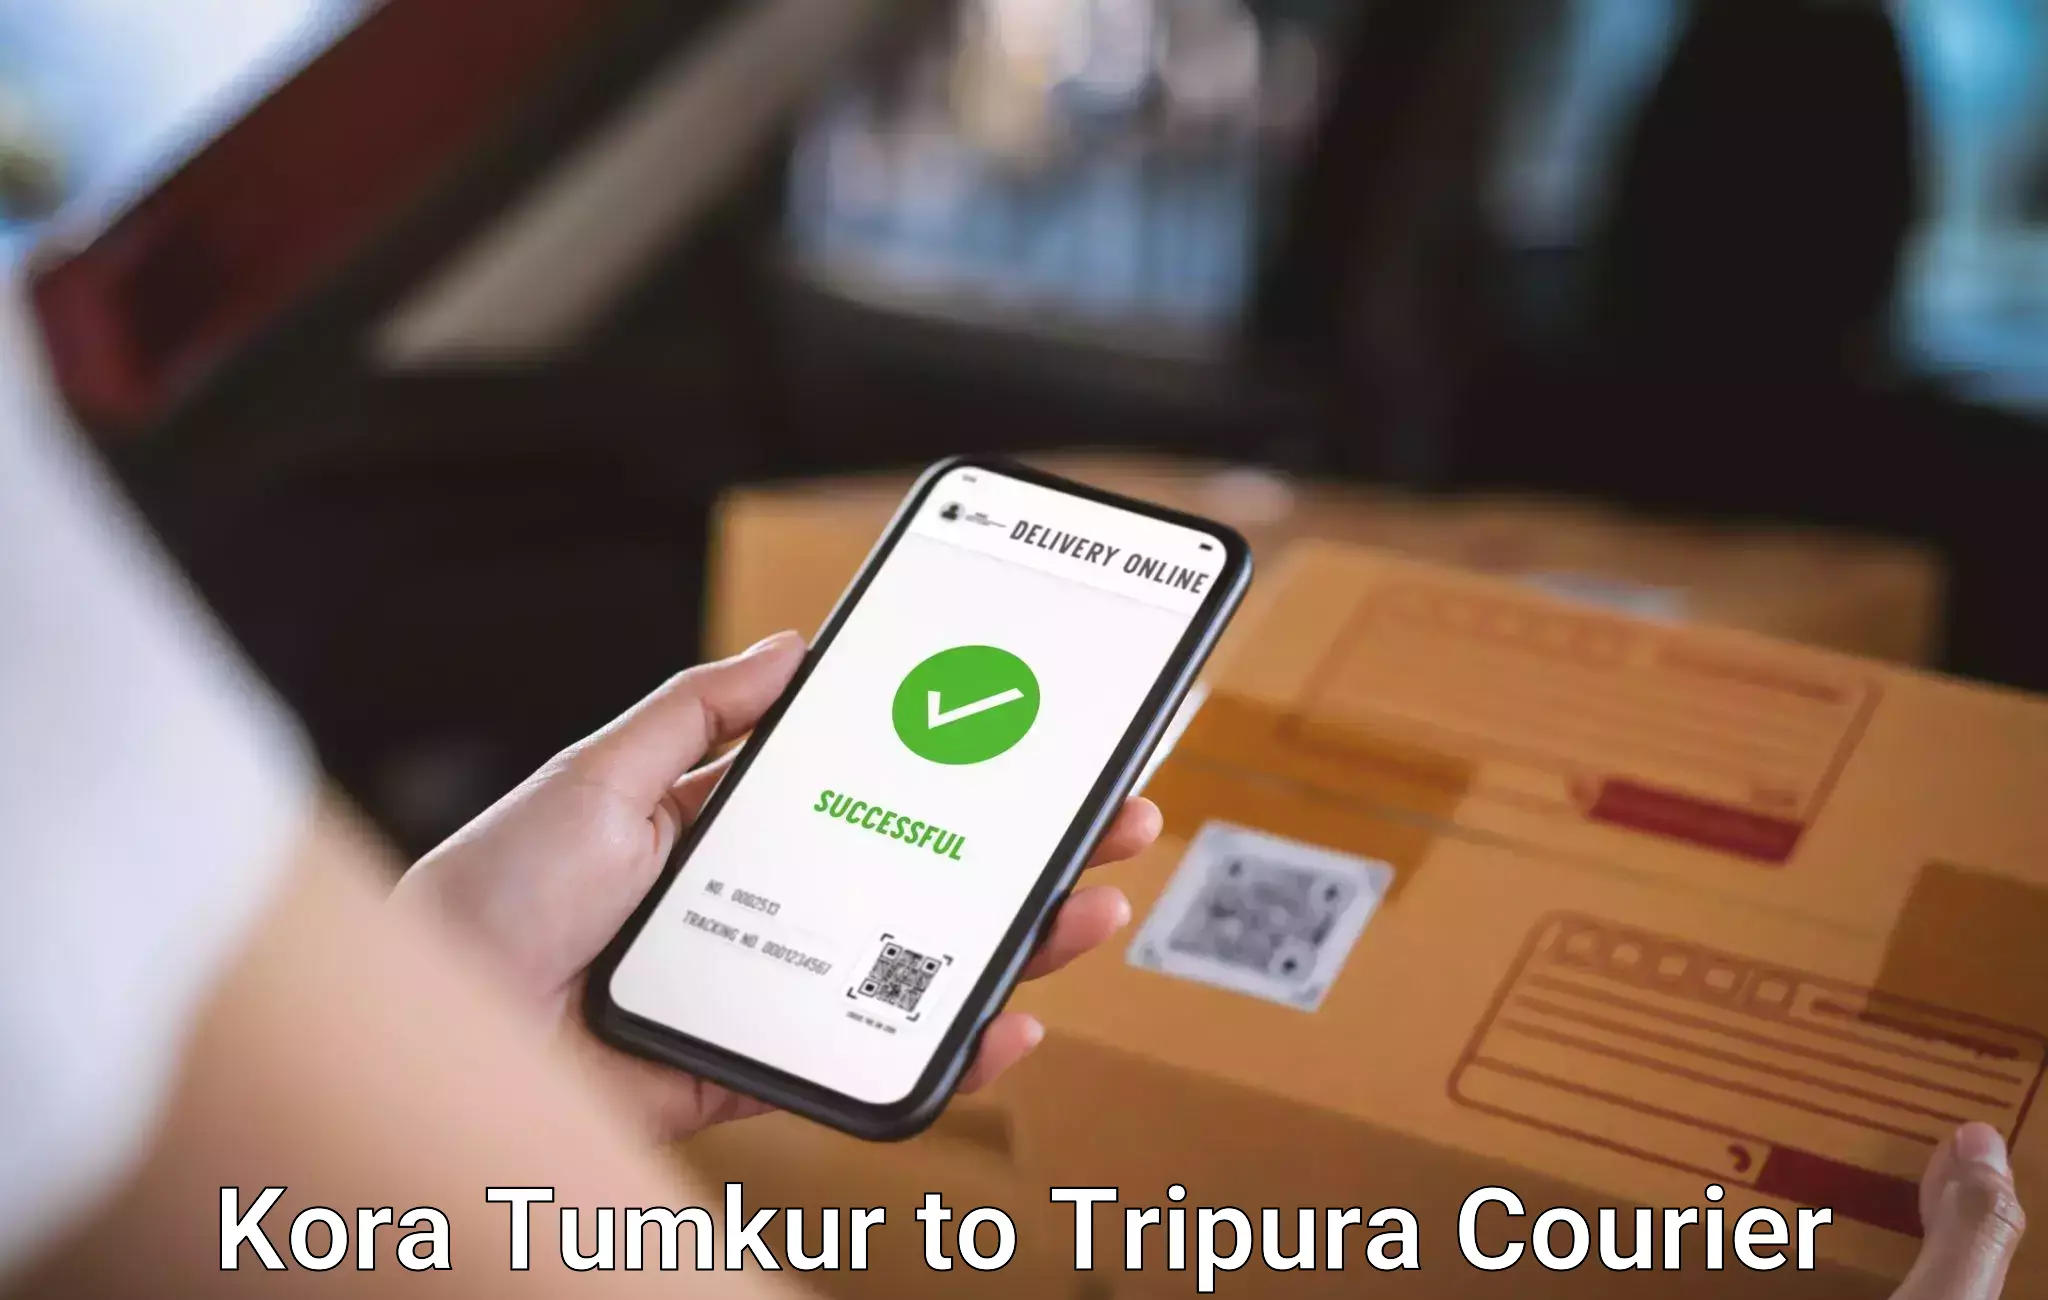 Reliable luggage courier Kora Tumkur to West Tripura